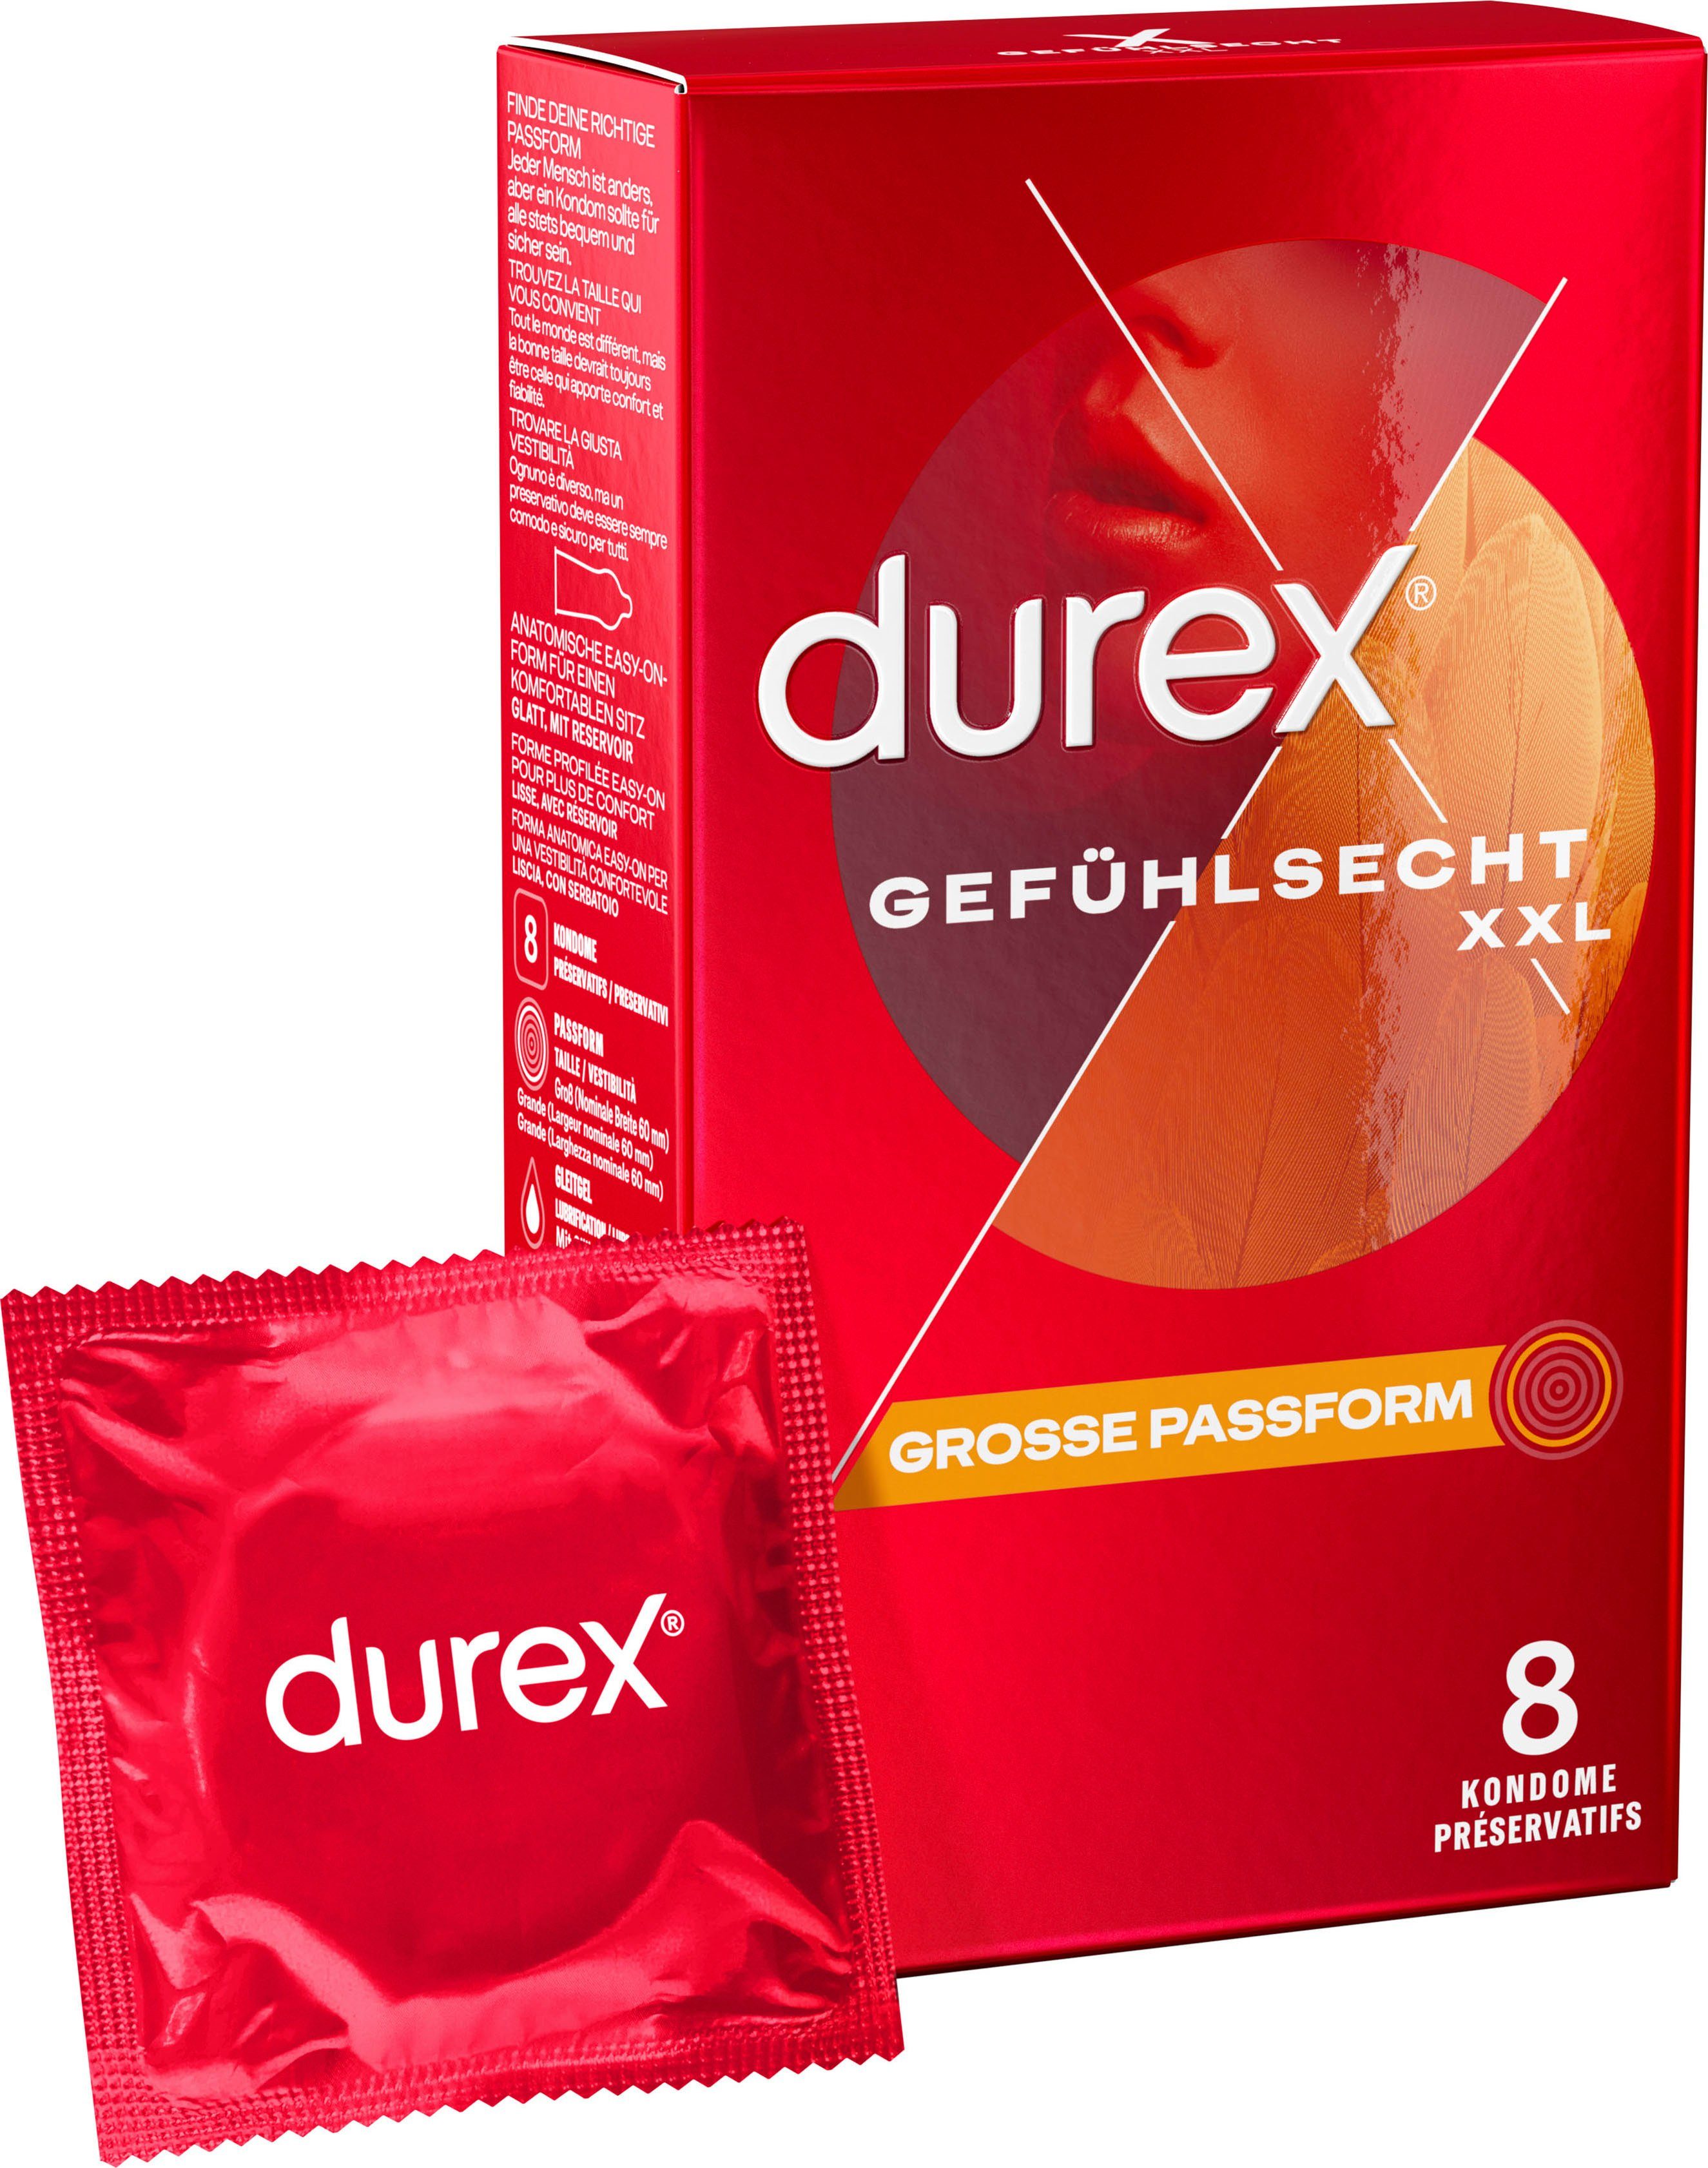 durex XXL-Kondome Gefühlsecht Extra Groß Packung, 8 St., Dünn für ein intensives Gefühl und innige Zweisamkeit, große Passform | Kondome